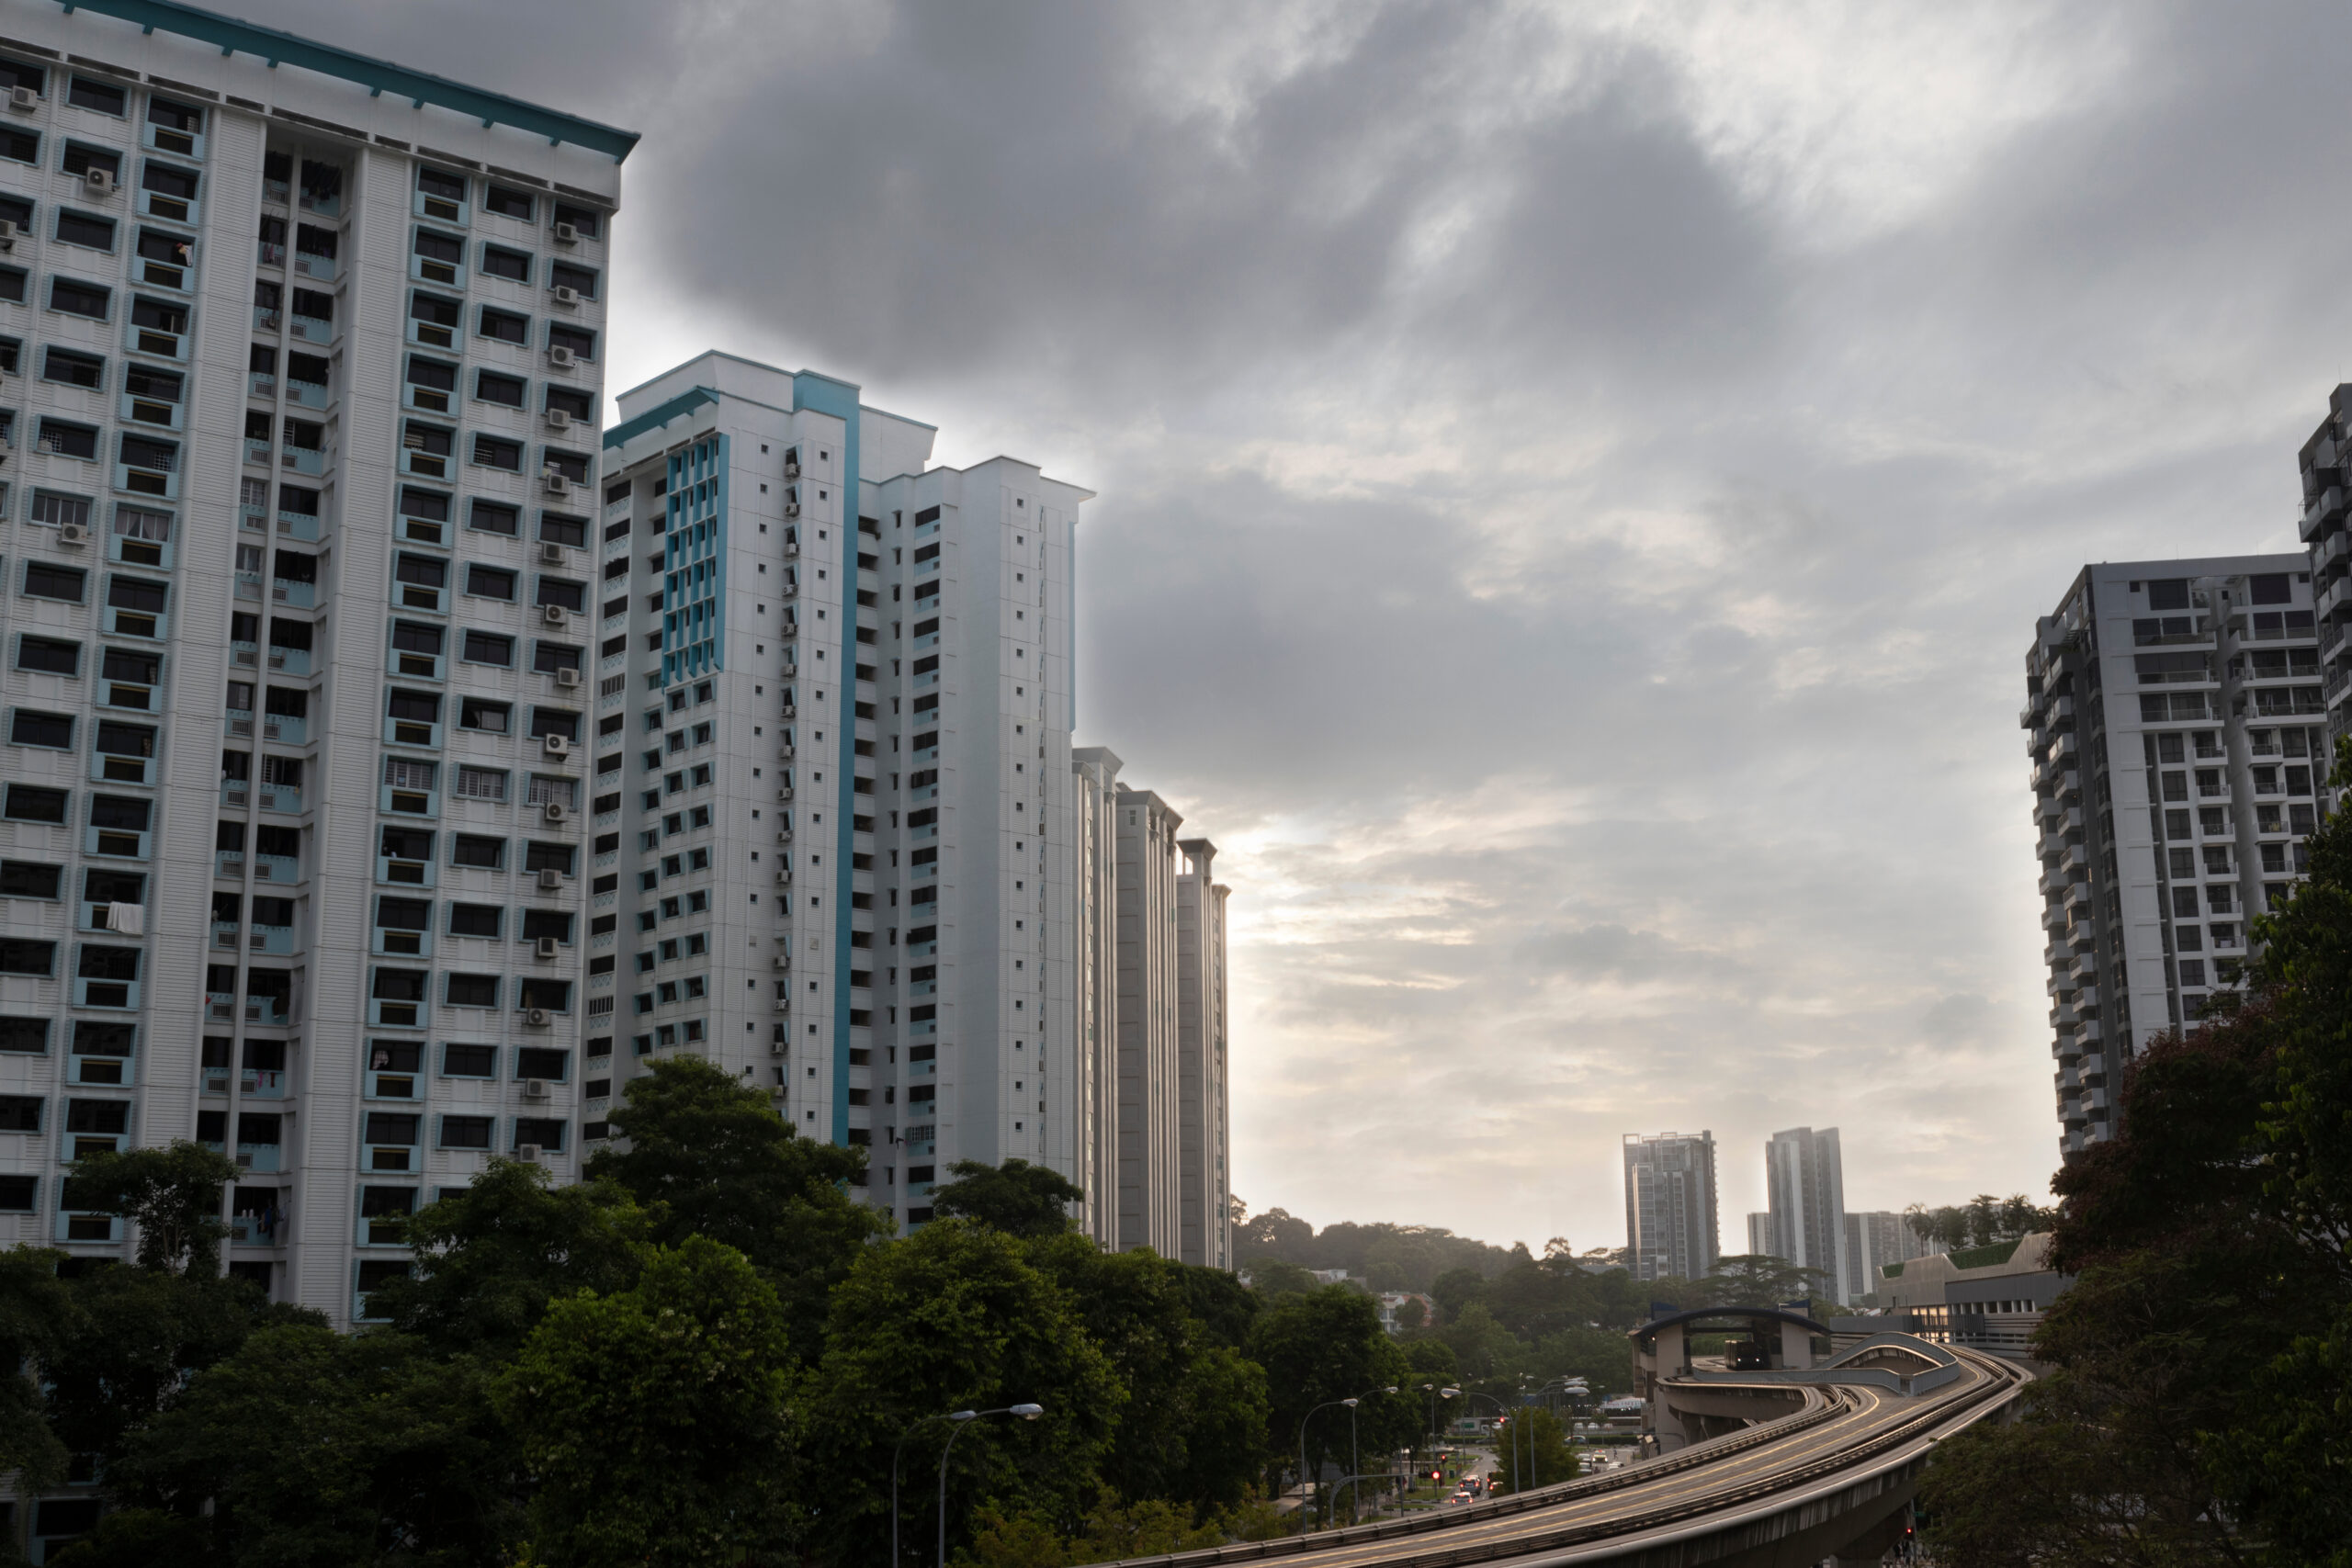 A landscape snapshot of HDB apartments and LRT tracks in Bukit Panjang